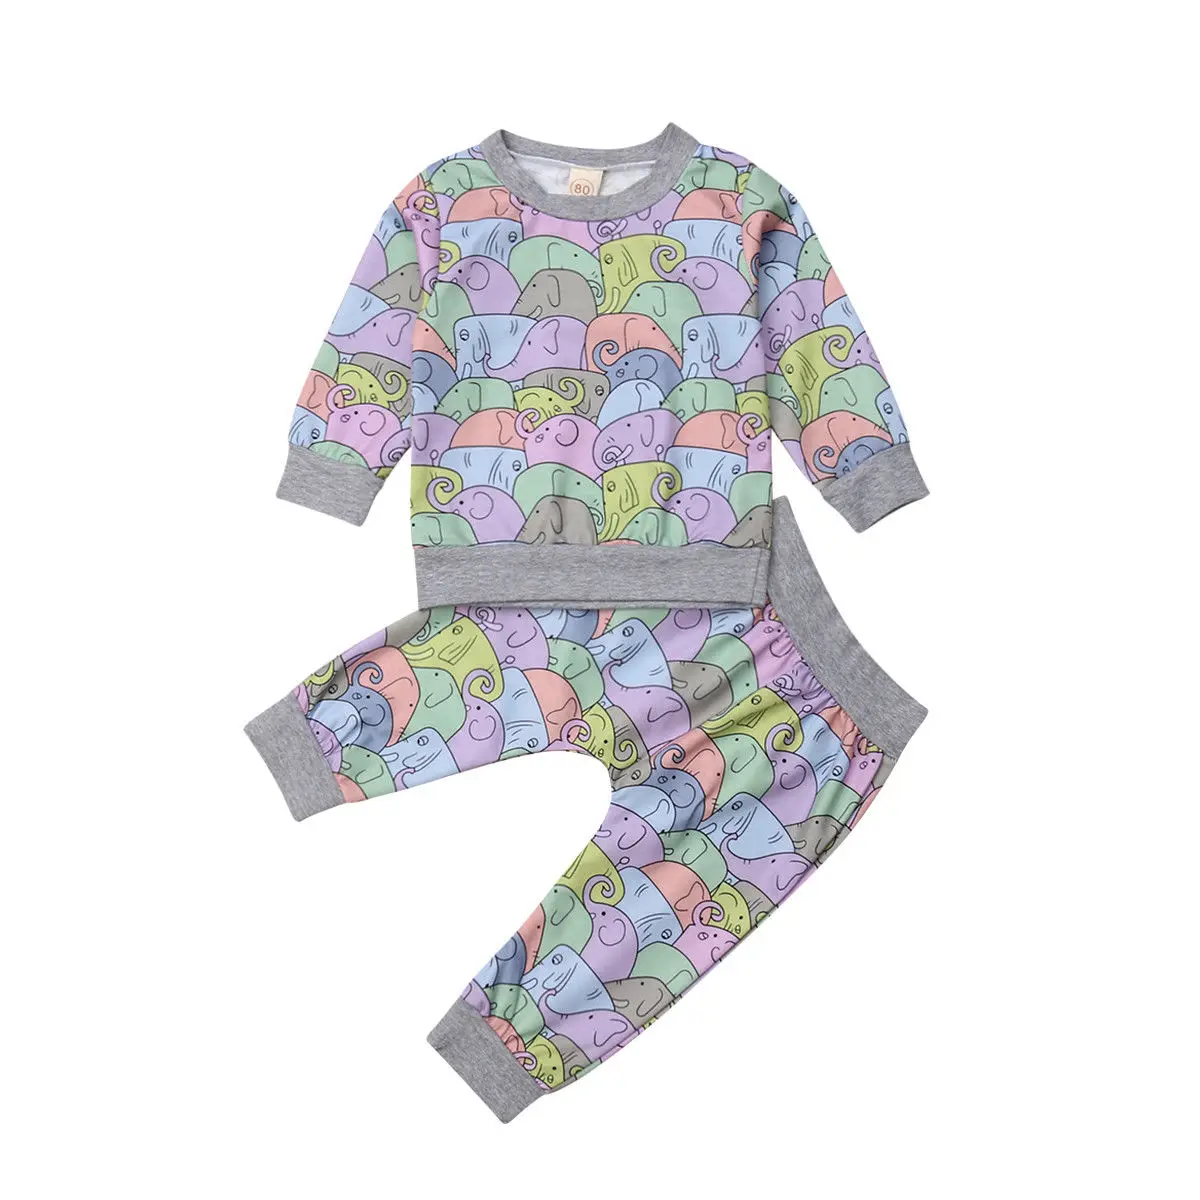 Яркие топы с принтом слона для маленьких мальчиков и девочек, свитер с длинными рукавами, штаны-шаровары, комплект одежды